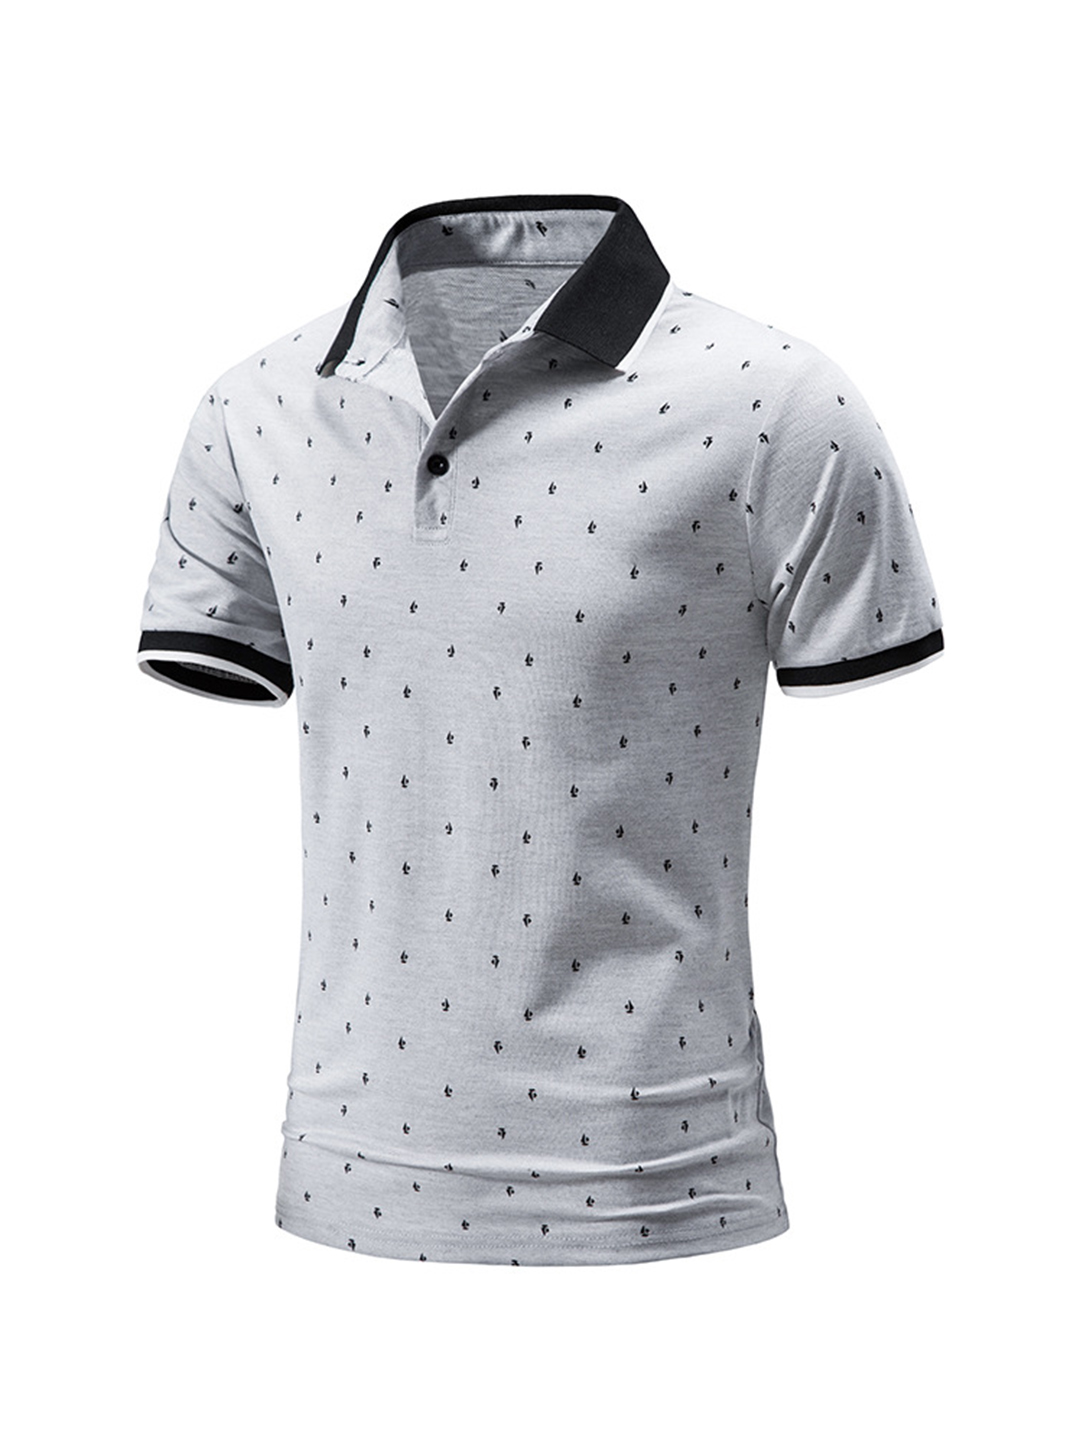 Men's Polka-dot Printed Casual Polo T-shirt